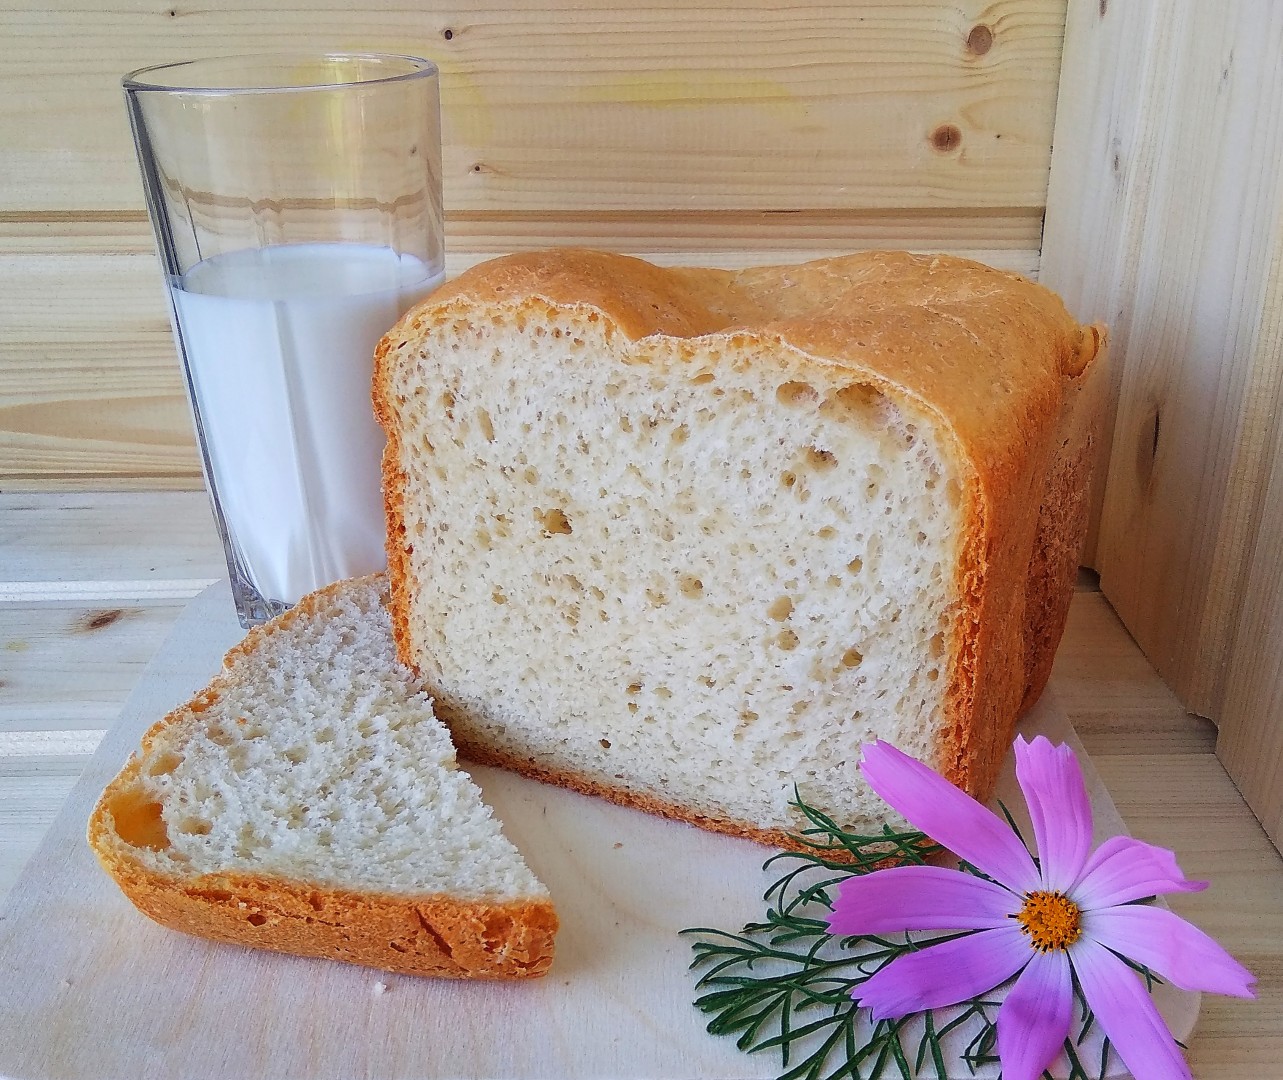 Пошаговый рецепт хлеба в хлебопечке. Хлебопечка французский хлеб. Франзцский хоеб в хлебопечее. Домашний хлеб в хлебопечке. Французская выпечка хлеба в хлебопечке.